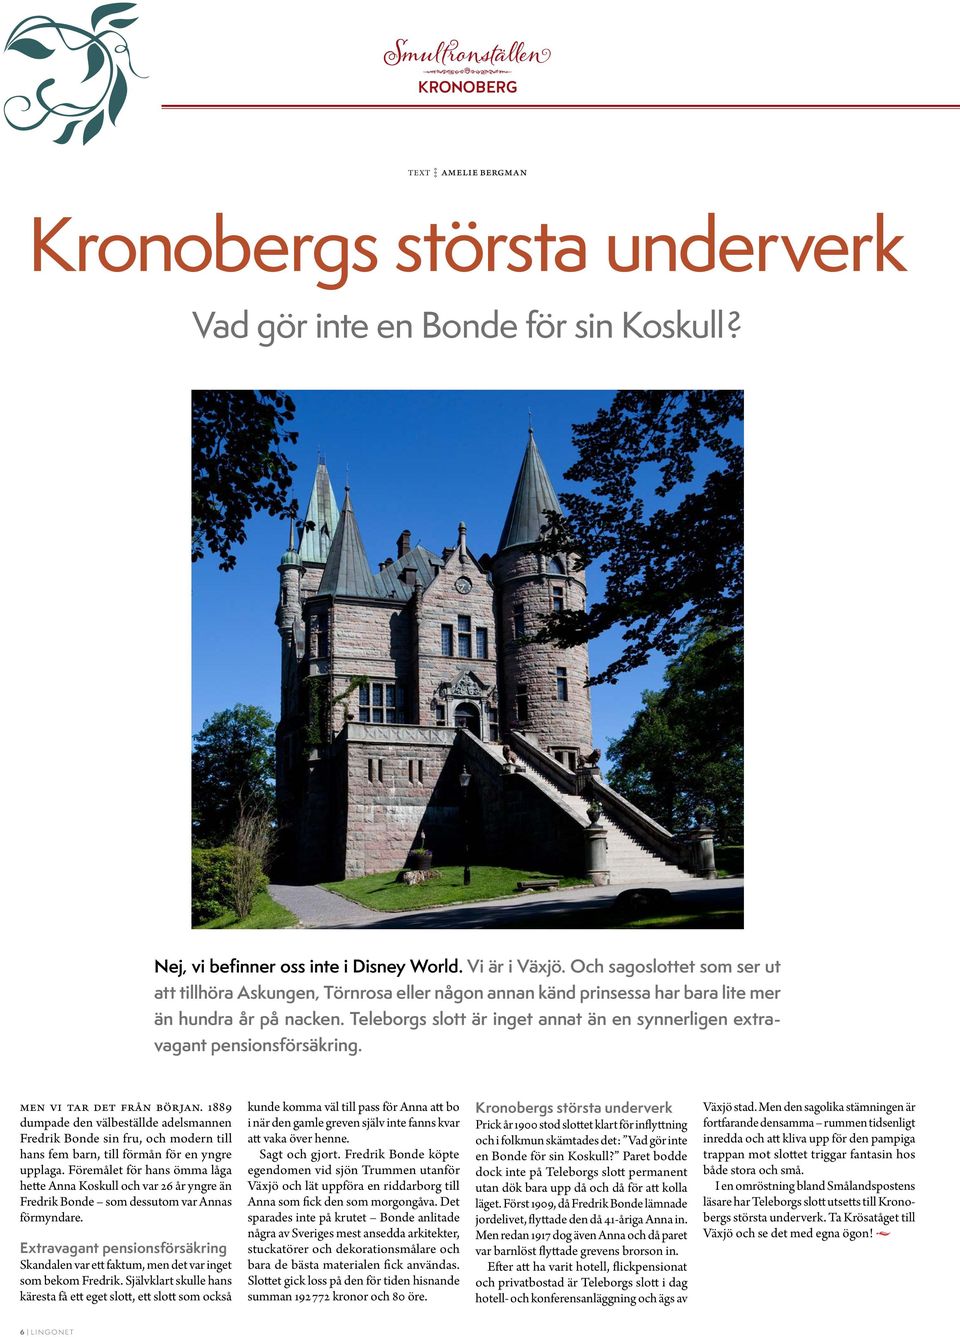 Teleborgs slott är inget annat än en synnerligen extravagant pensionsförsäkring. Men vi tar det från början.